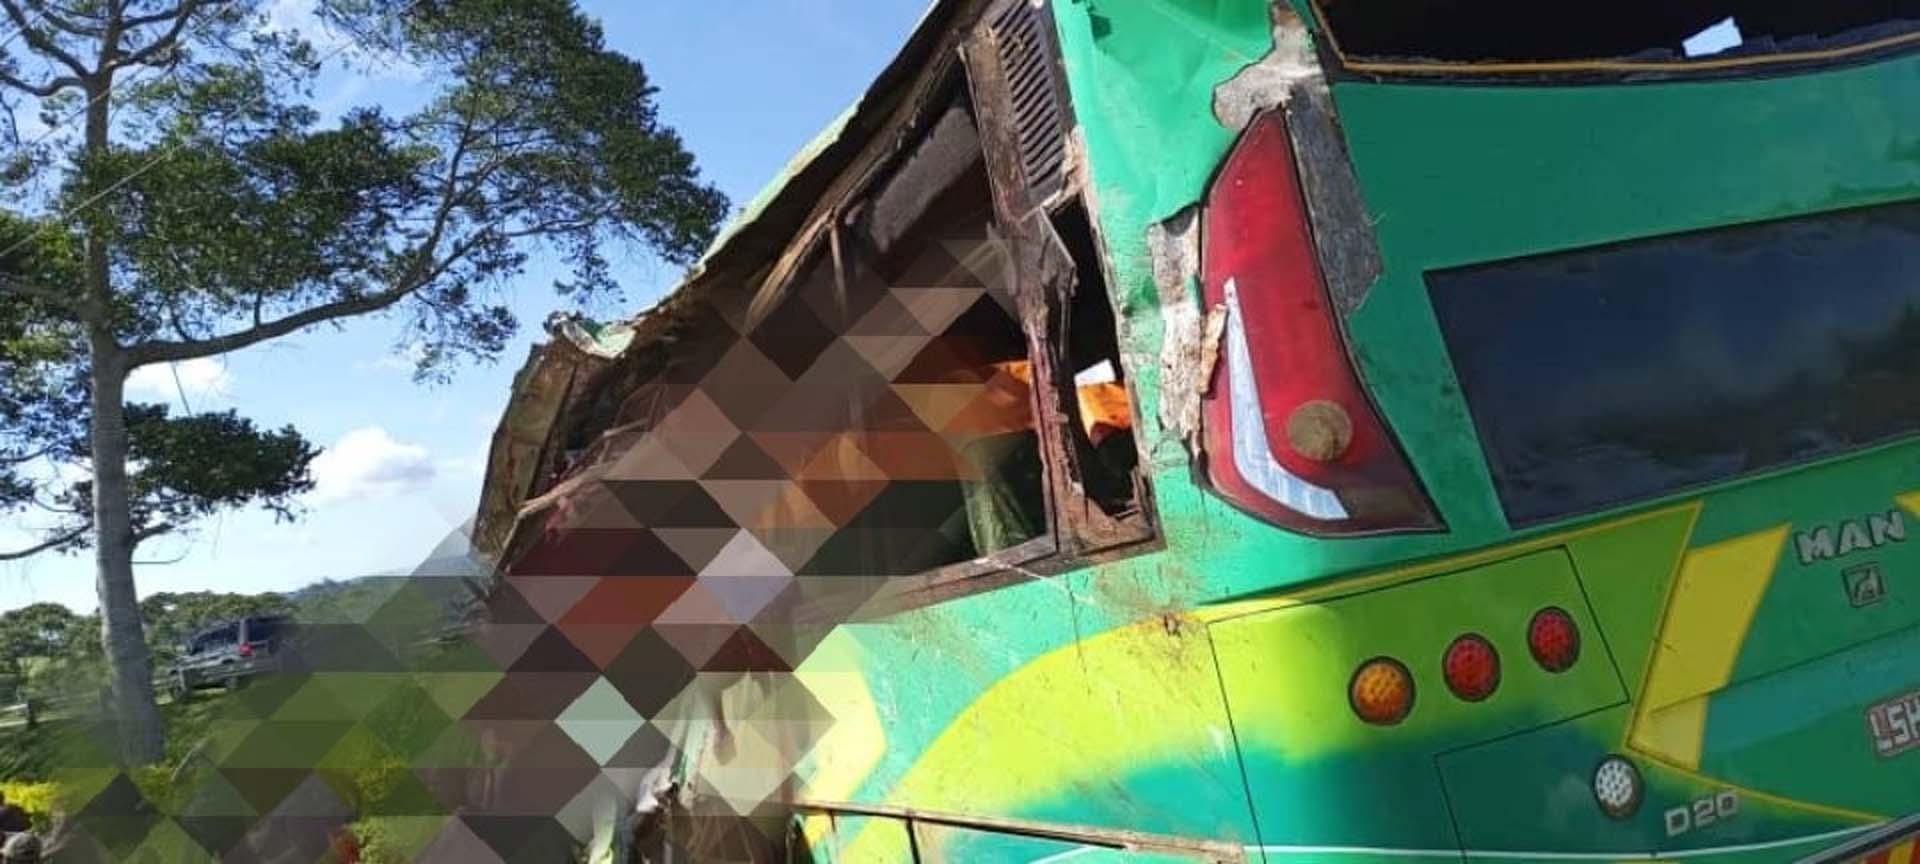 Uganda'da feci otobüs kazası! Çok sayıda ölü ve yaralılar var